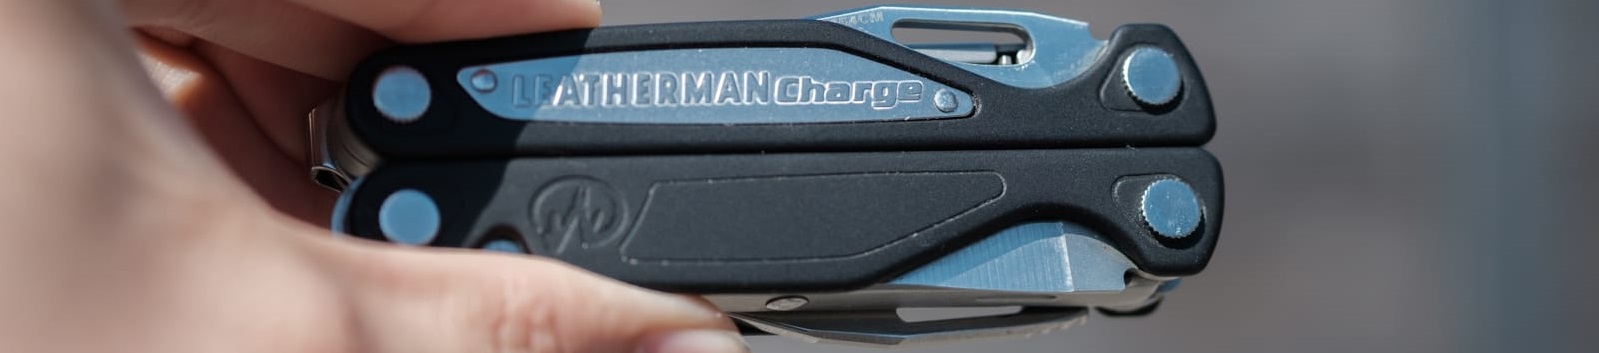 Мультиинструмент Leatherman Charge ALX 830714 с черными алюминиевыми пластинами на рукоятках